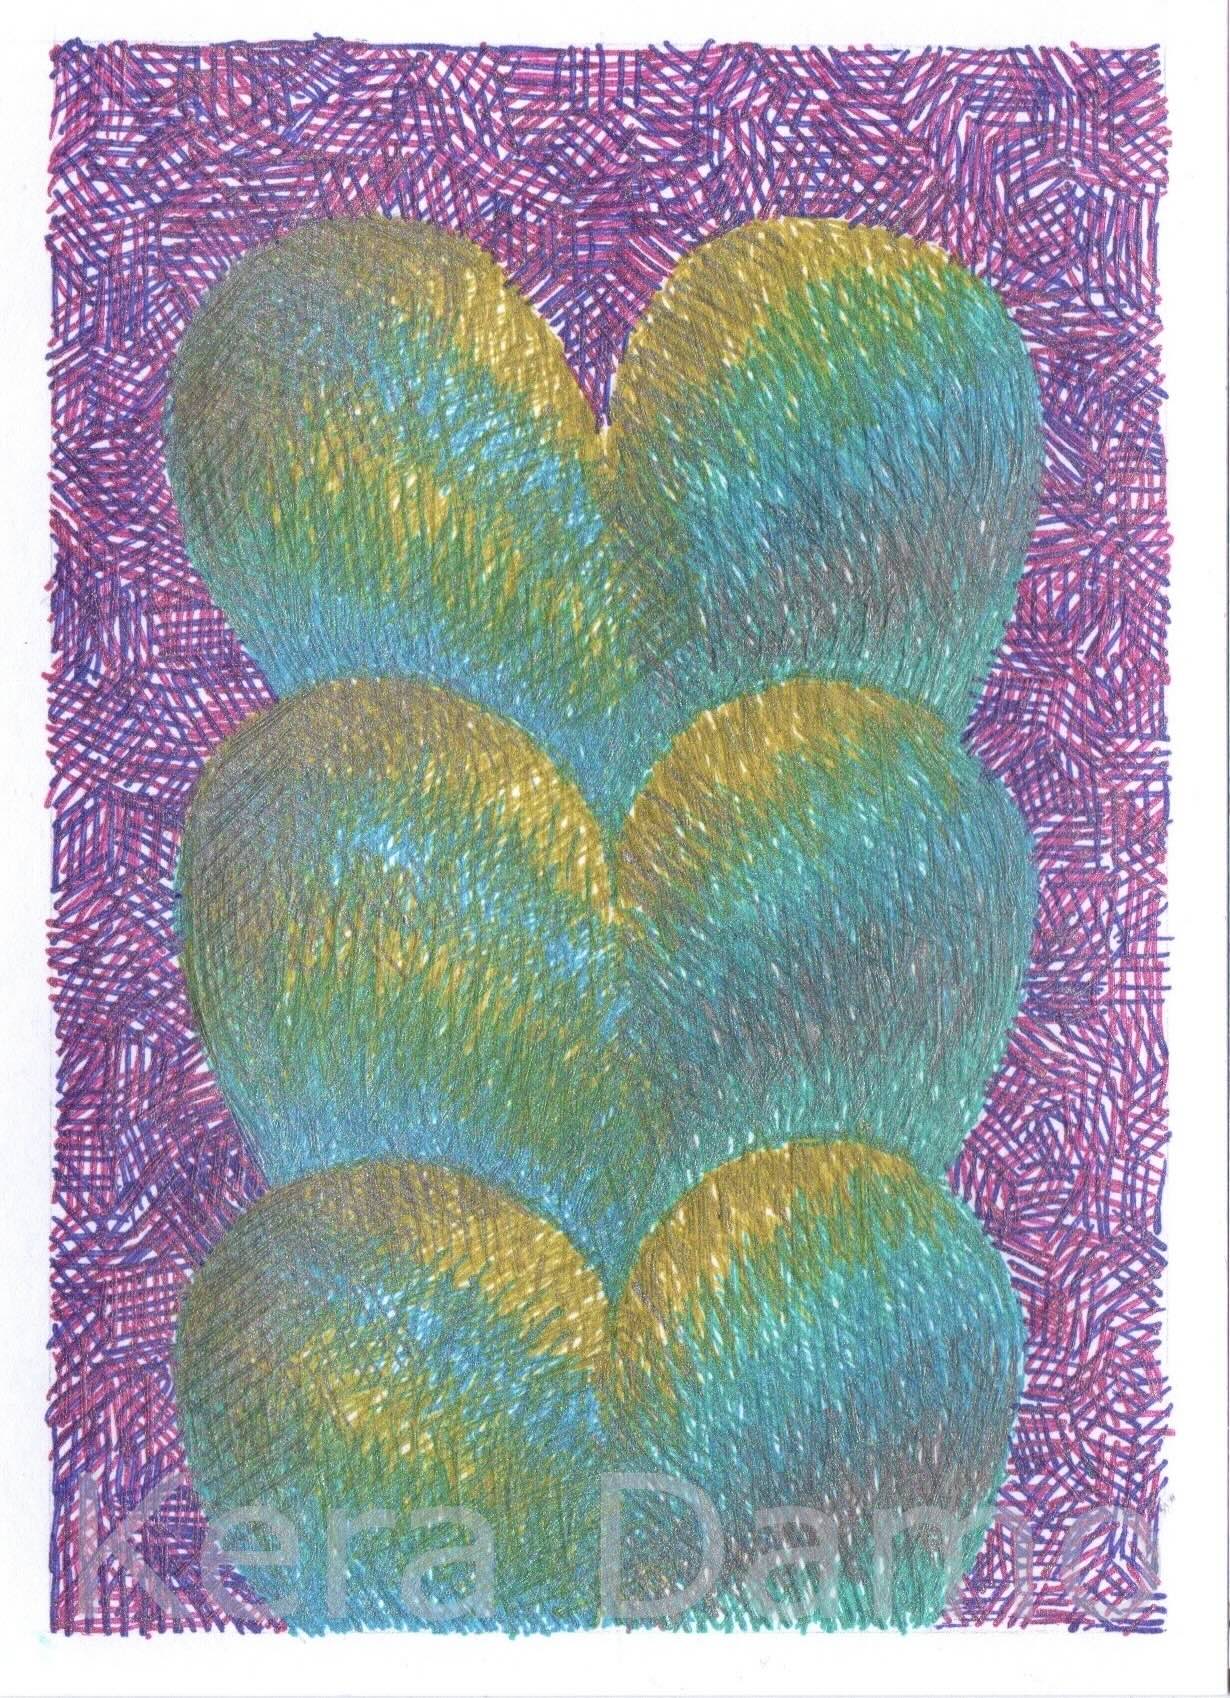 A multicoloured pen drawing using metallic pens, made by visual artist Kera Damo from the Hague / Een meerkleurige pentekening gemaakt met metallic pennen, door beeldend kunstenaar Kera Damo uit Den Haag